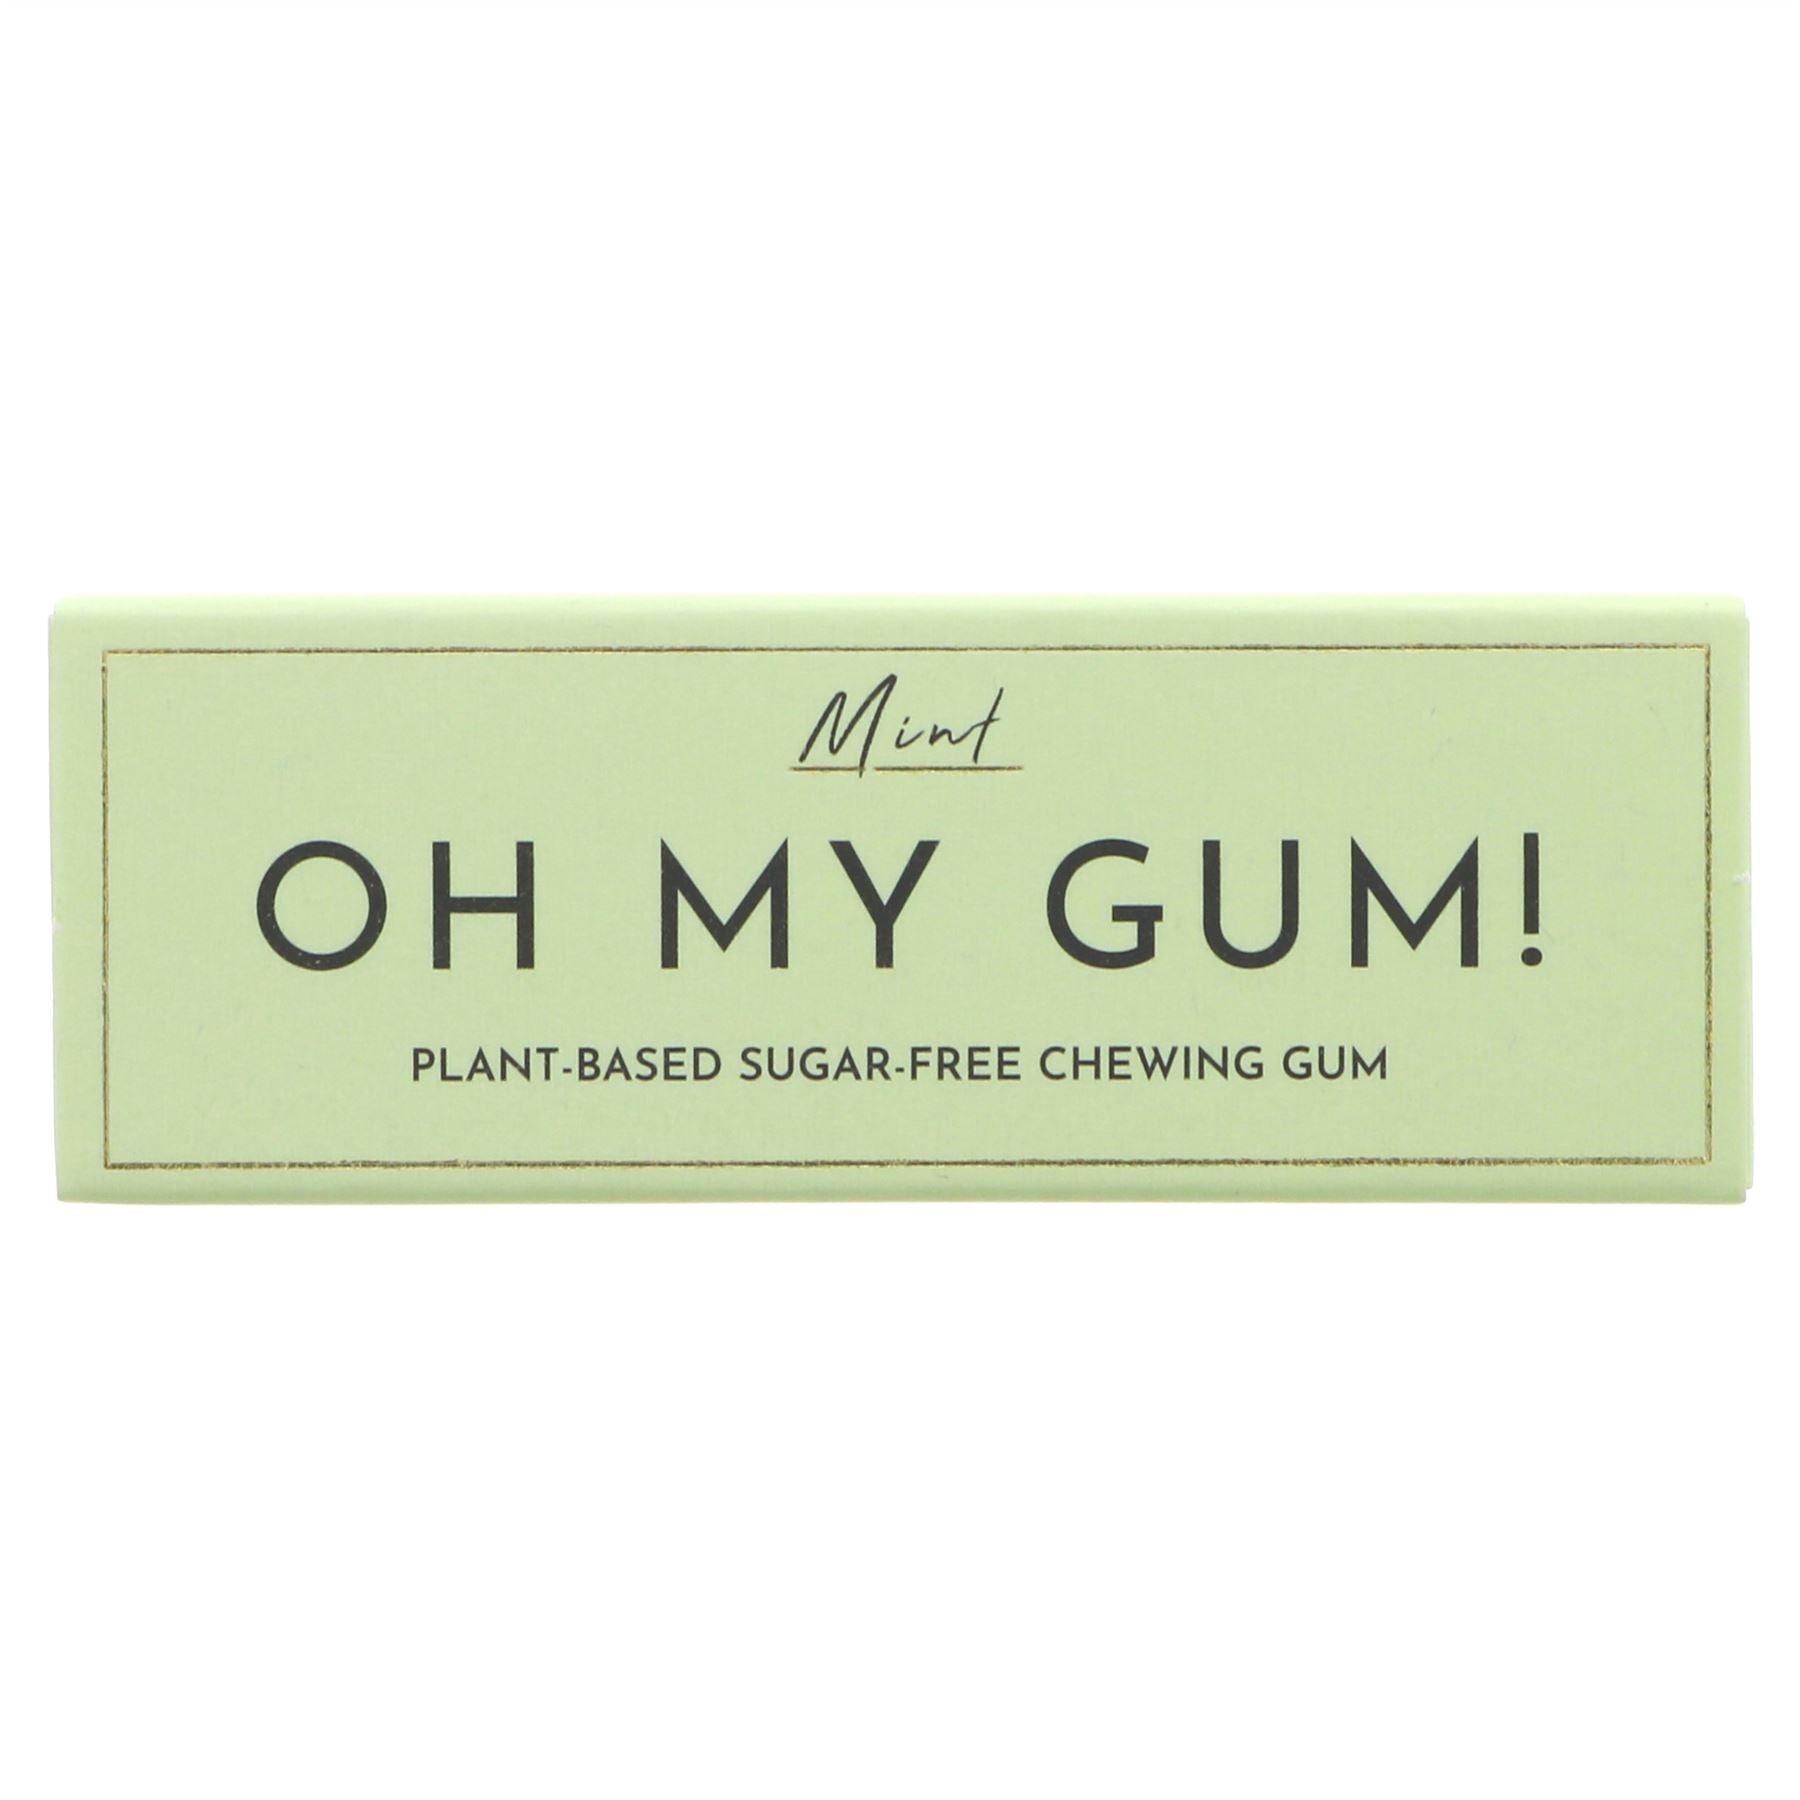 Chewing Gum Ingredients, Markets